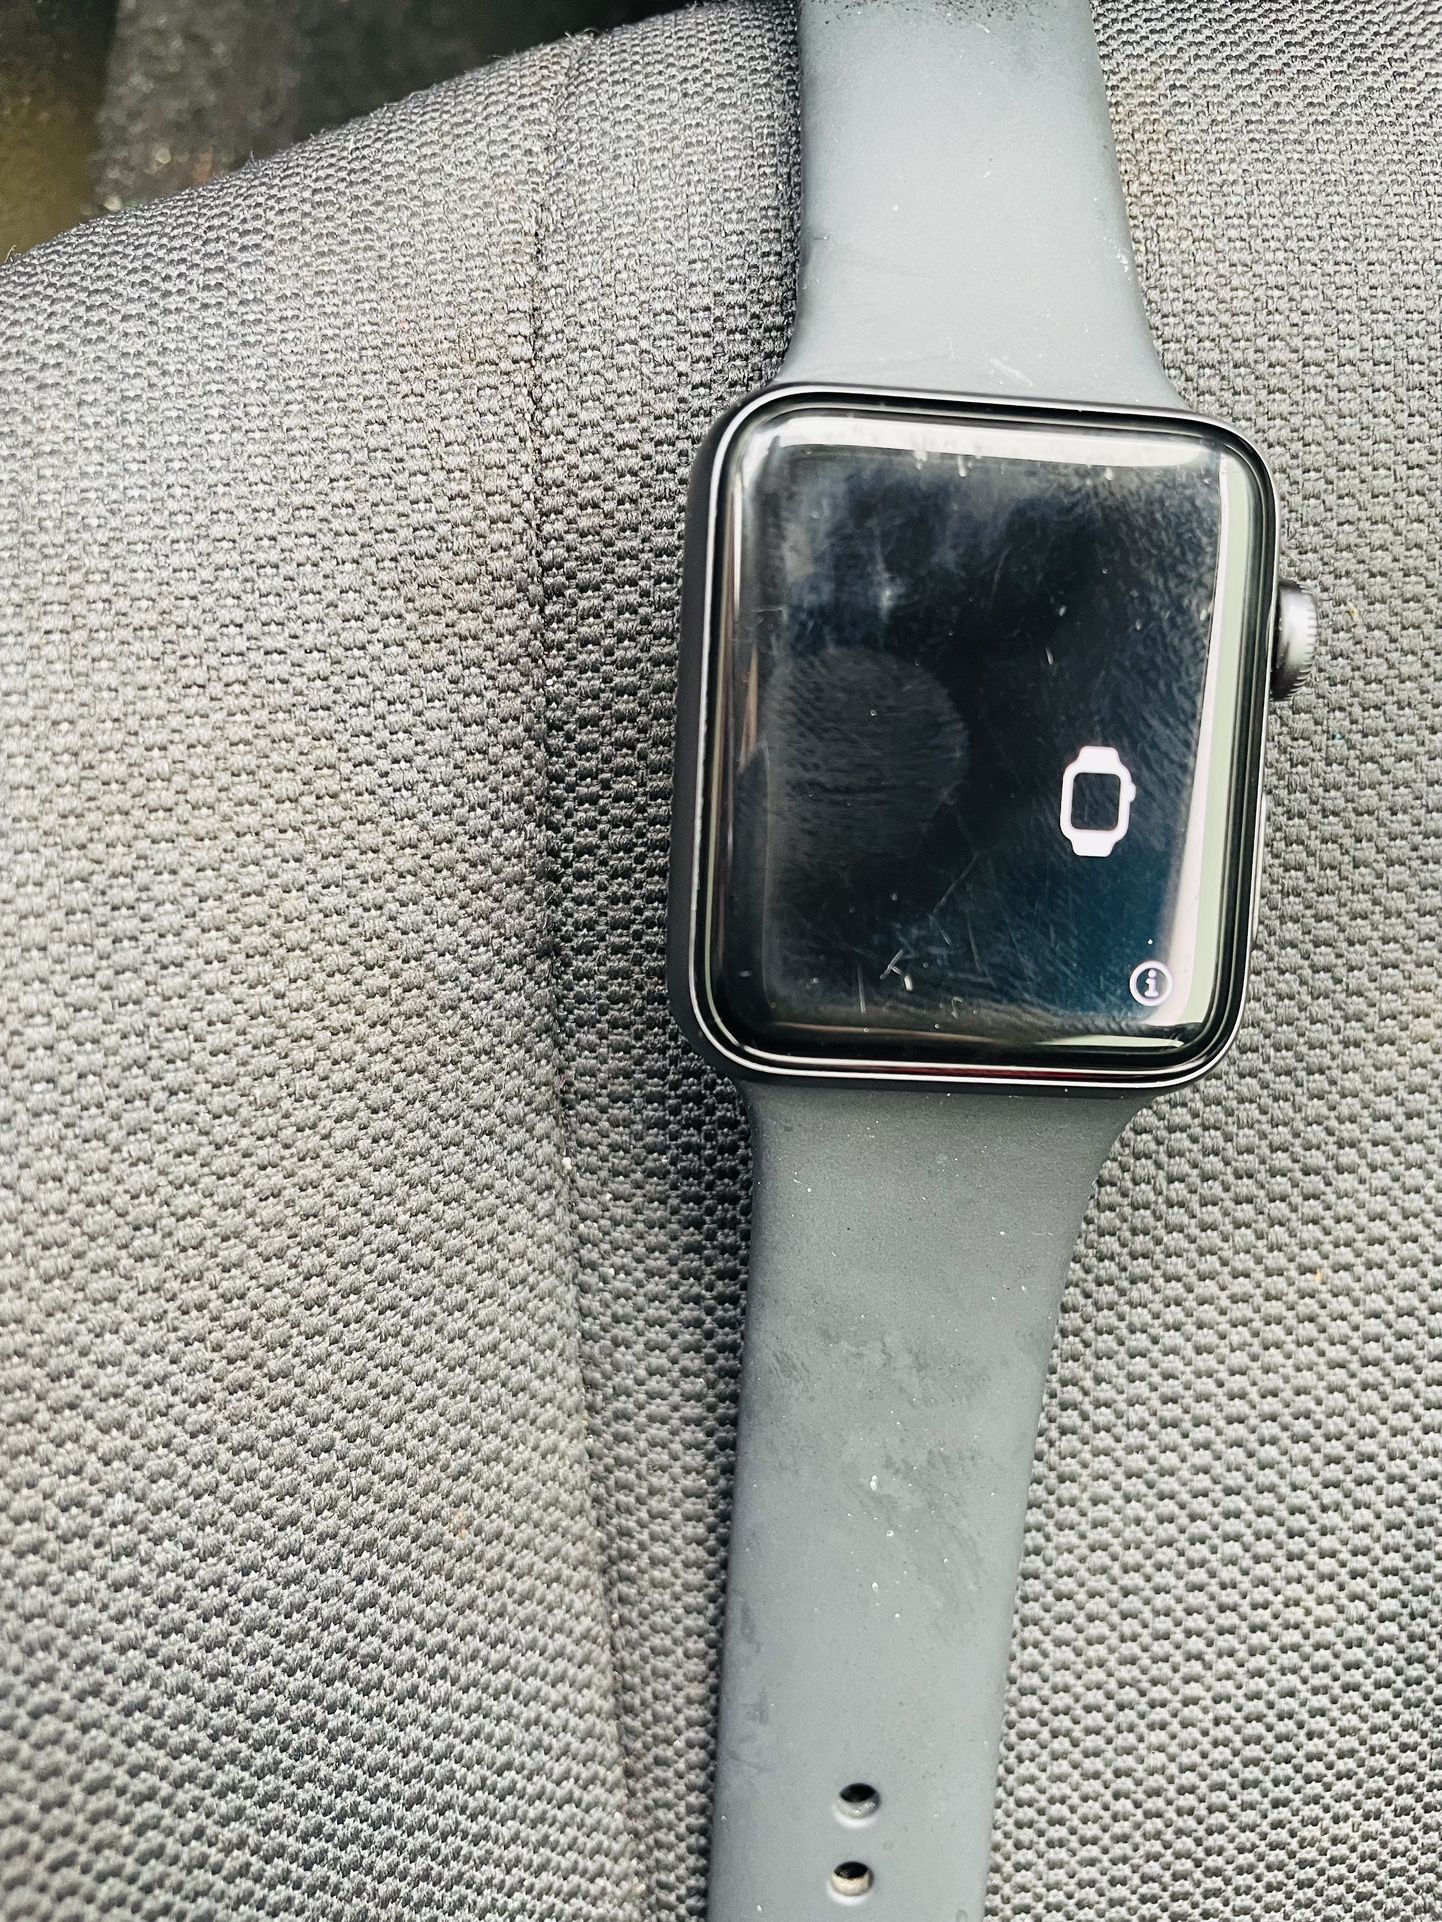 Apple Watch Serie 3 